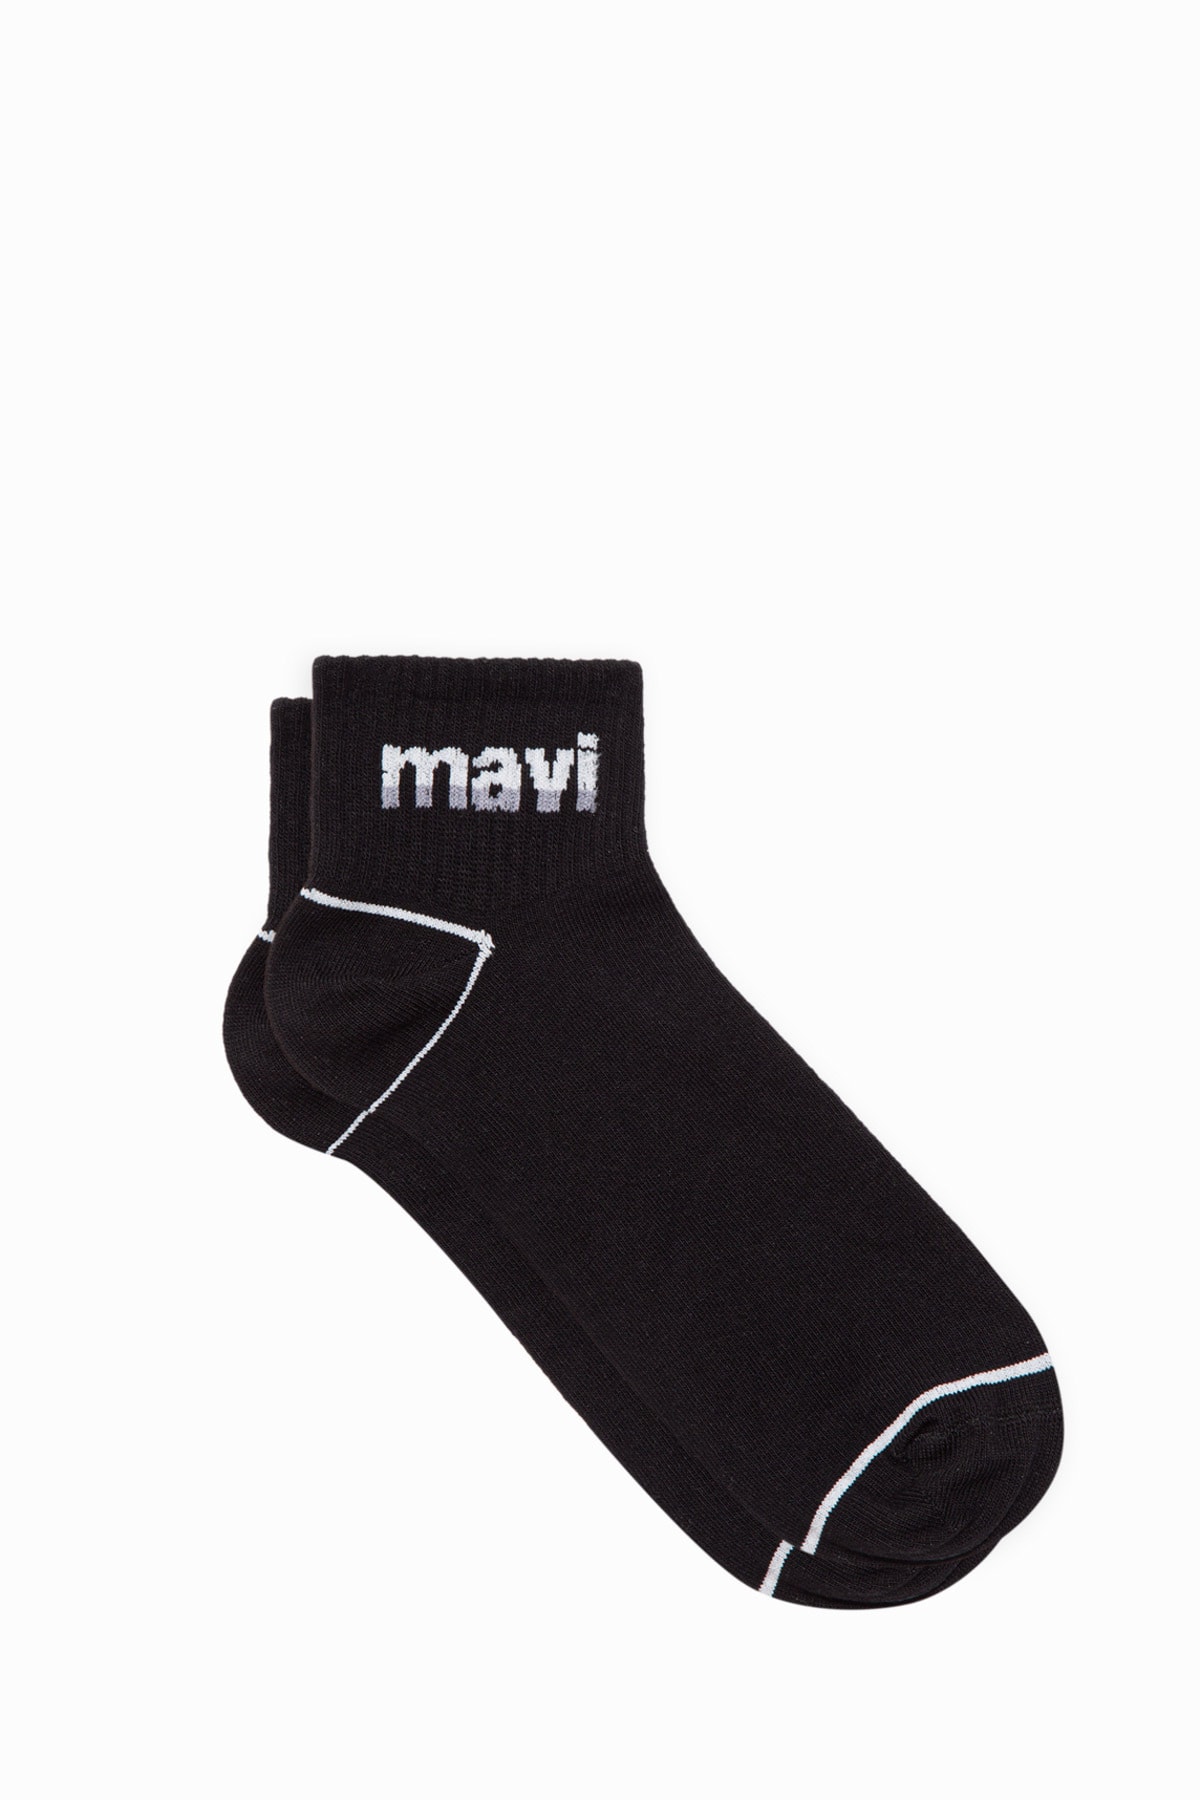 Mavi Logo Baskılı Siyah Soket Çorap 092523-900